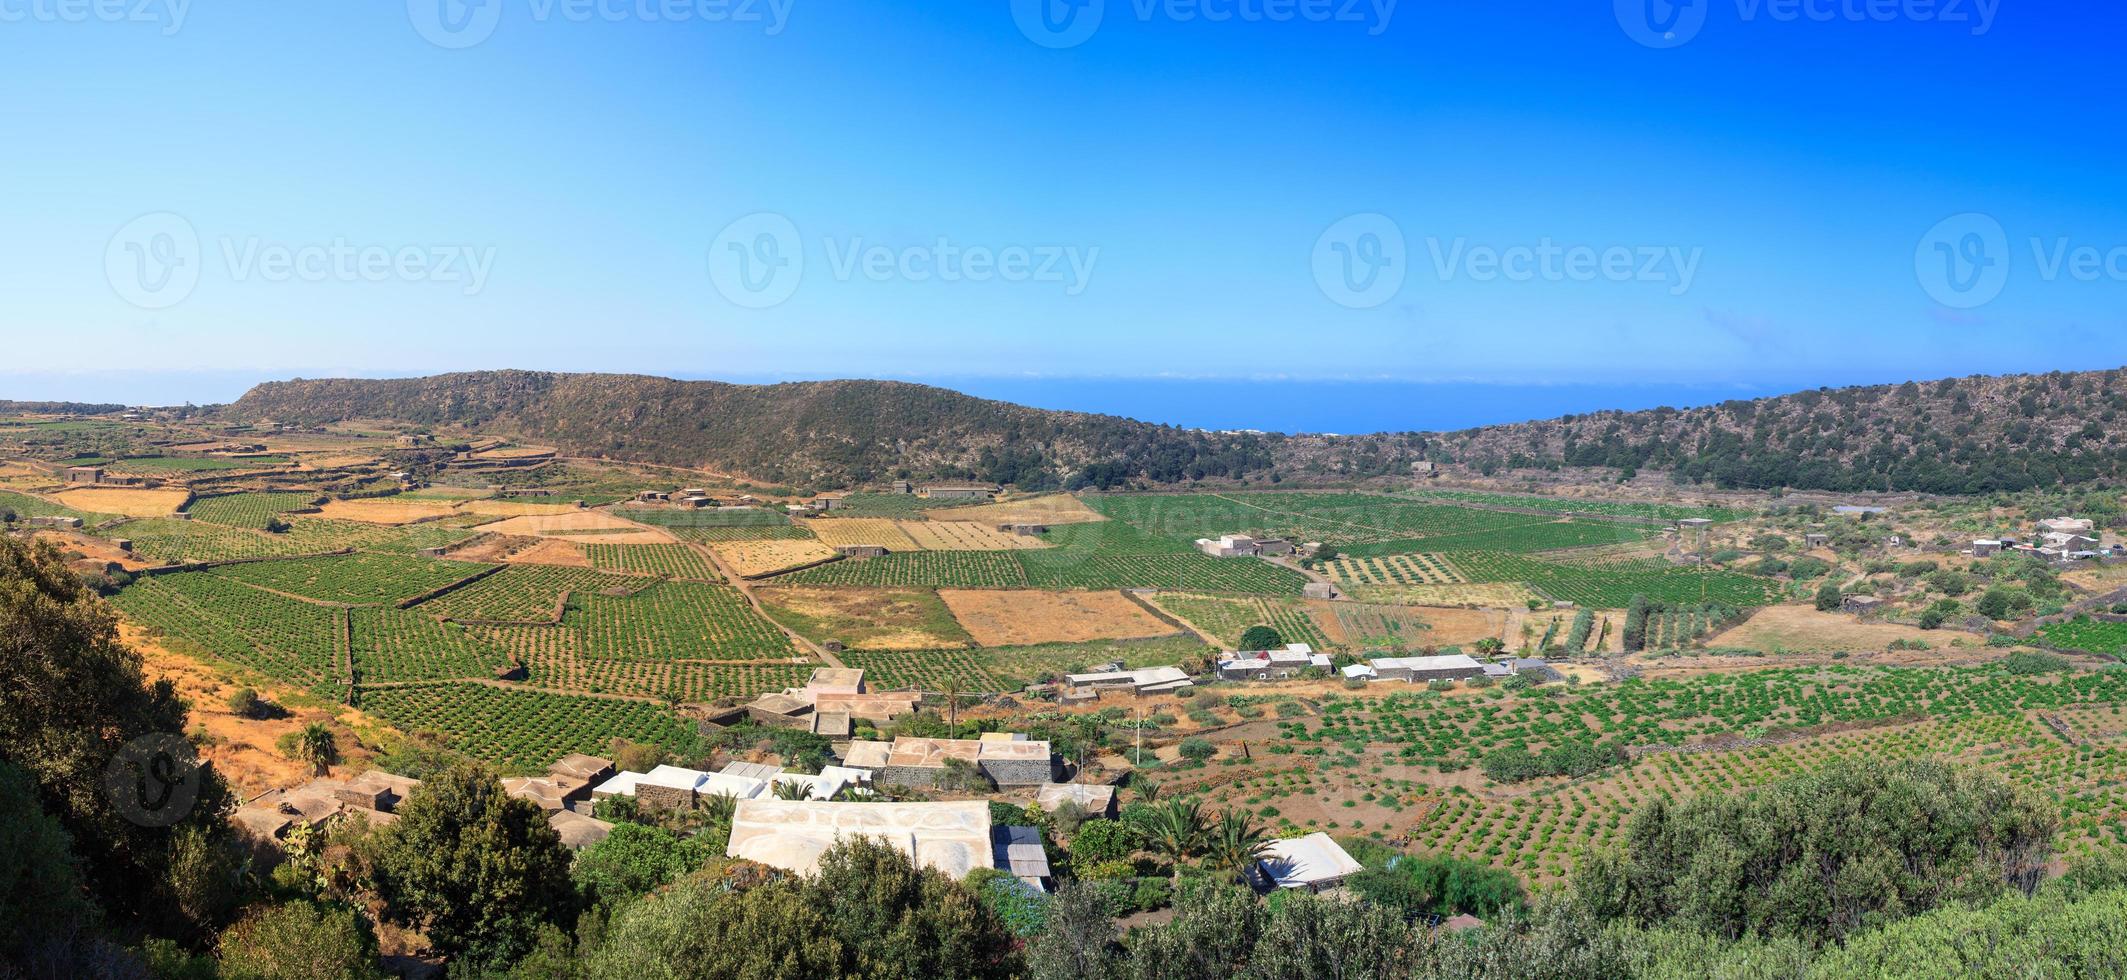 Monastero valley, Pantelleria photo